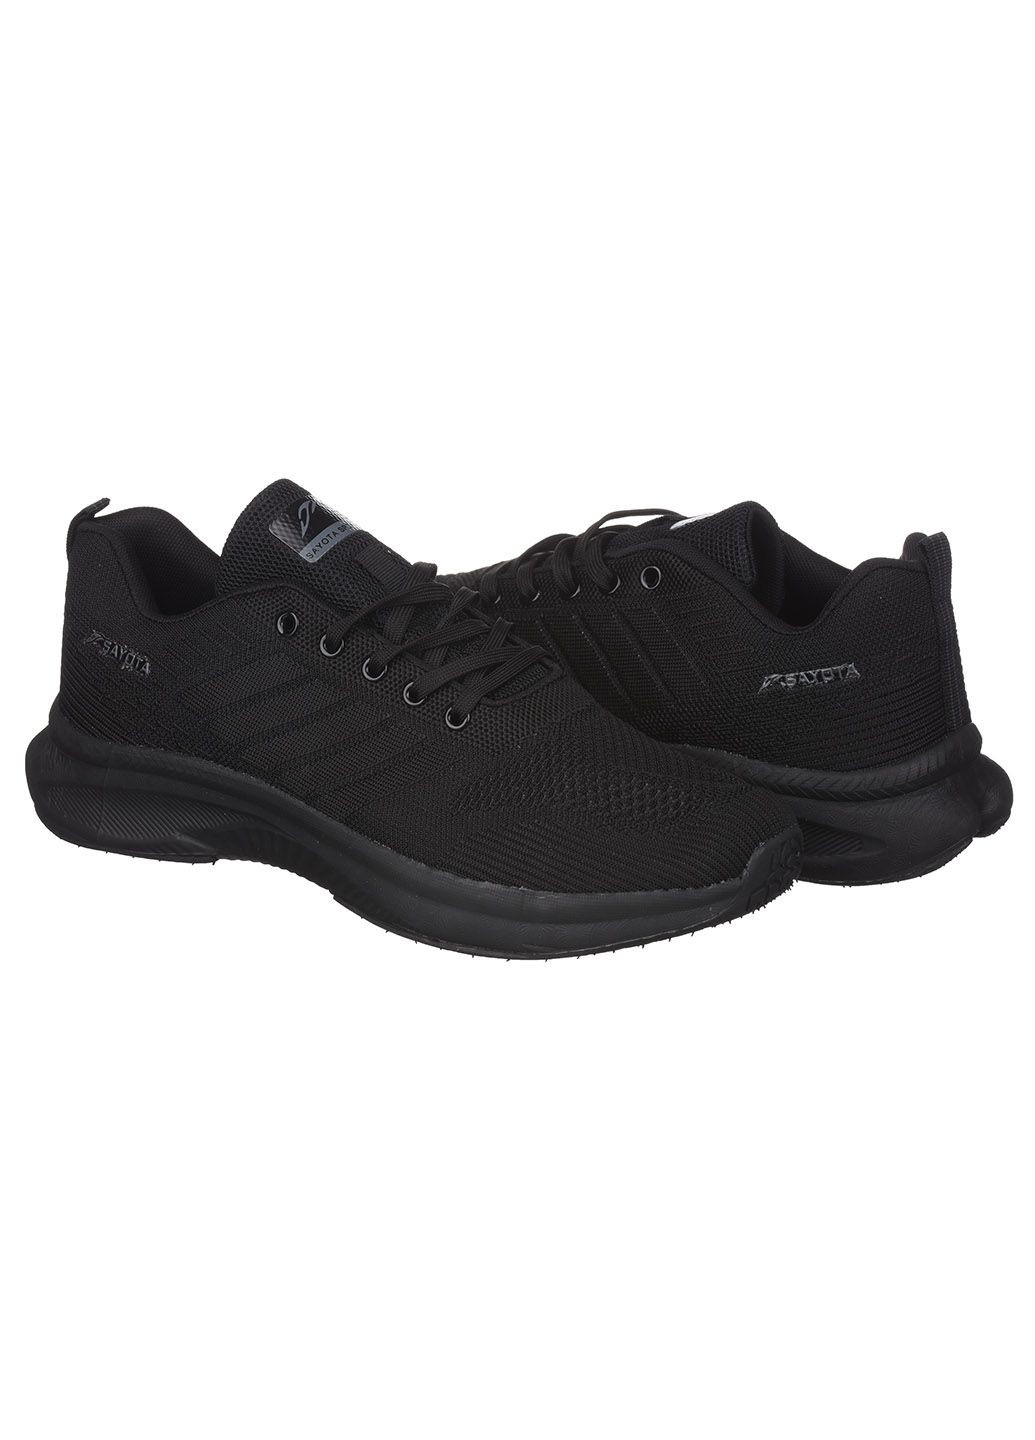 Черные демисезонные мужские кроссовки из текстиля спортивные Sayota